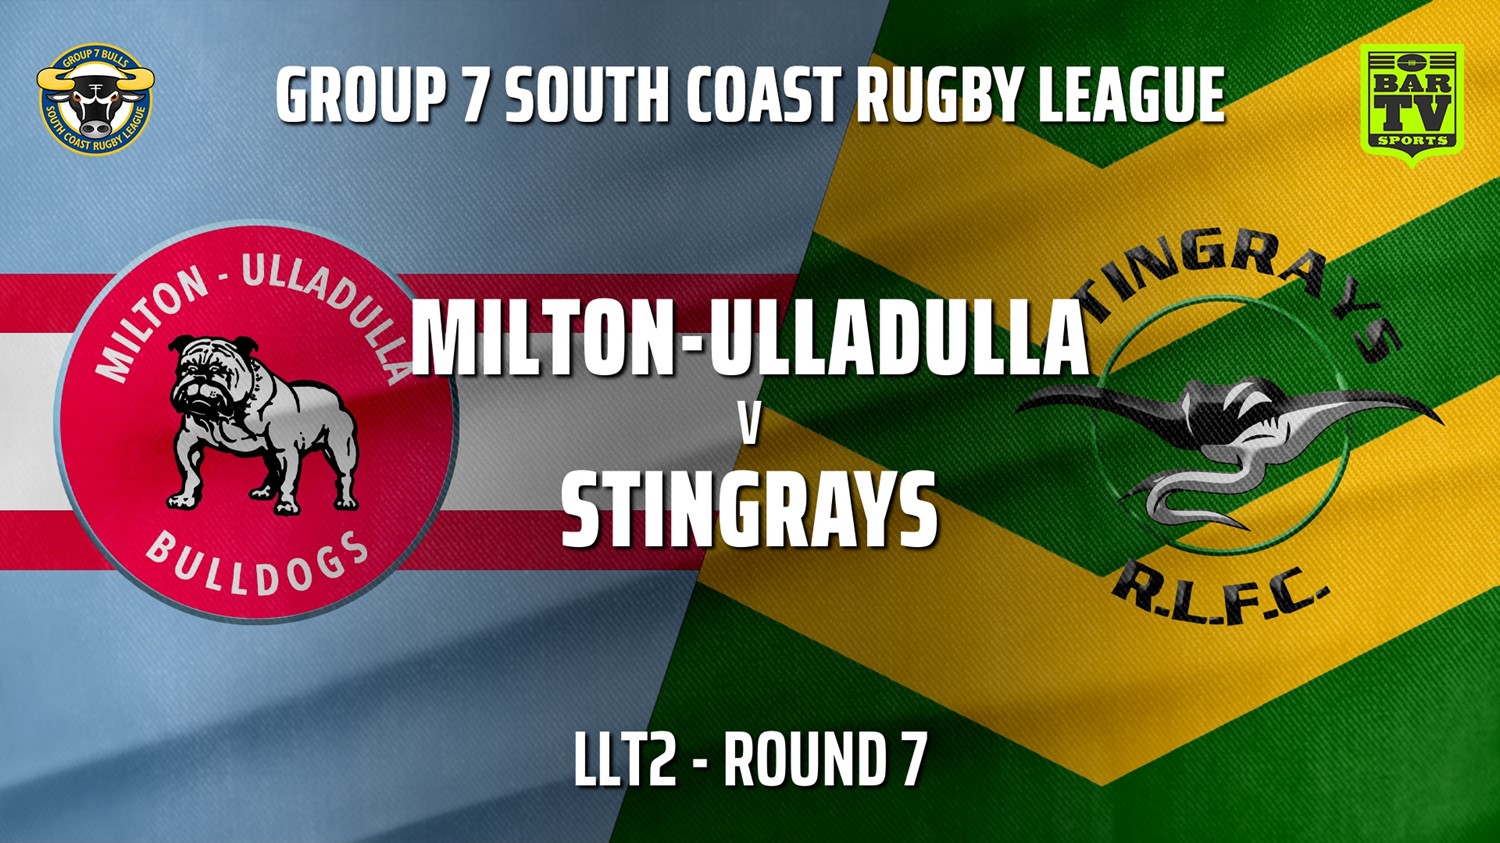 210530-Group 7 RL Round 7 - LLT2 - Milton-Ulladulla Bulldogs v Stingrays of Shellharbour Slate Image